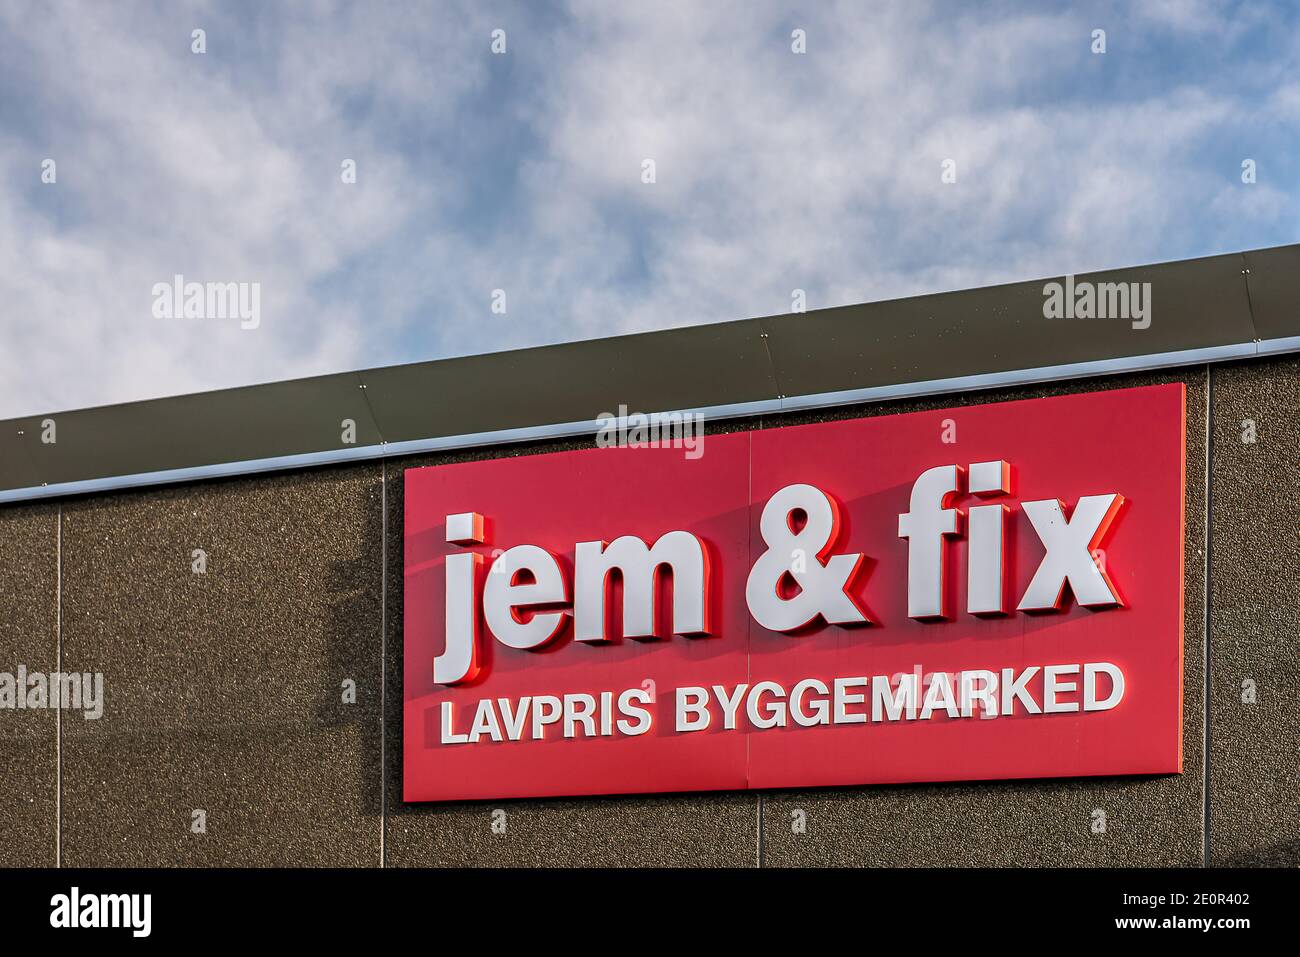 jem & FIX lavpris byggemarked signo en un edificio gris, Dinamarca, 2 de enero de 2021 Foto de stock